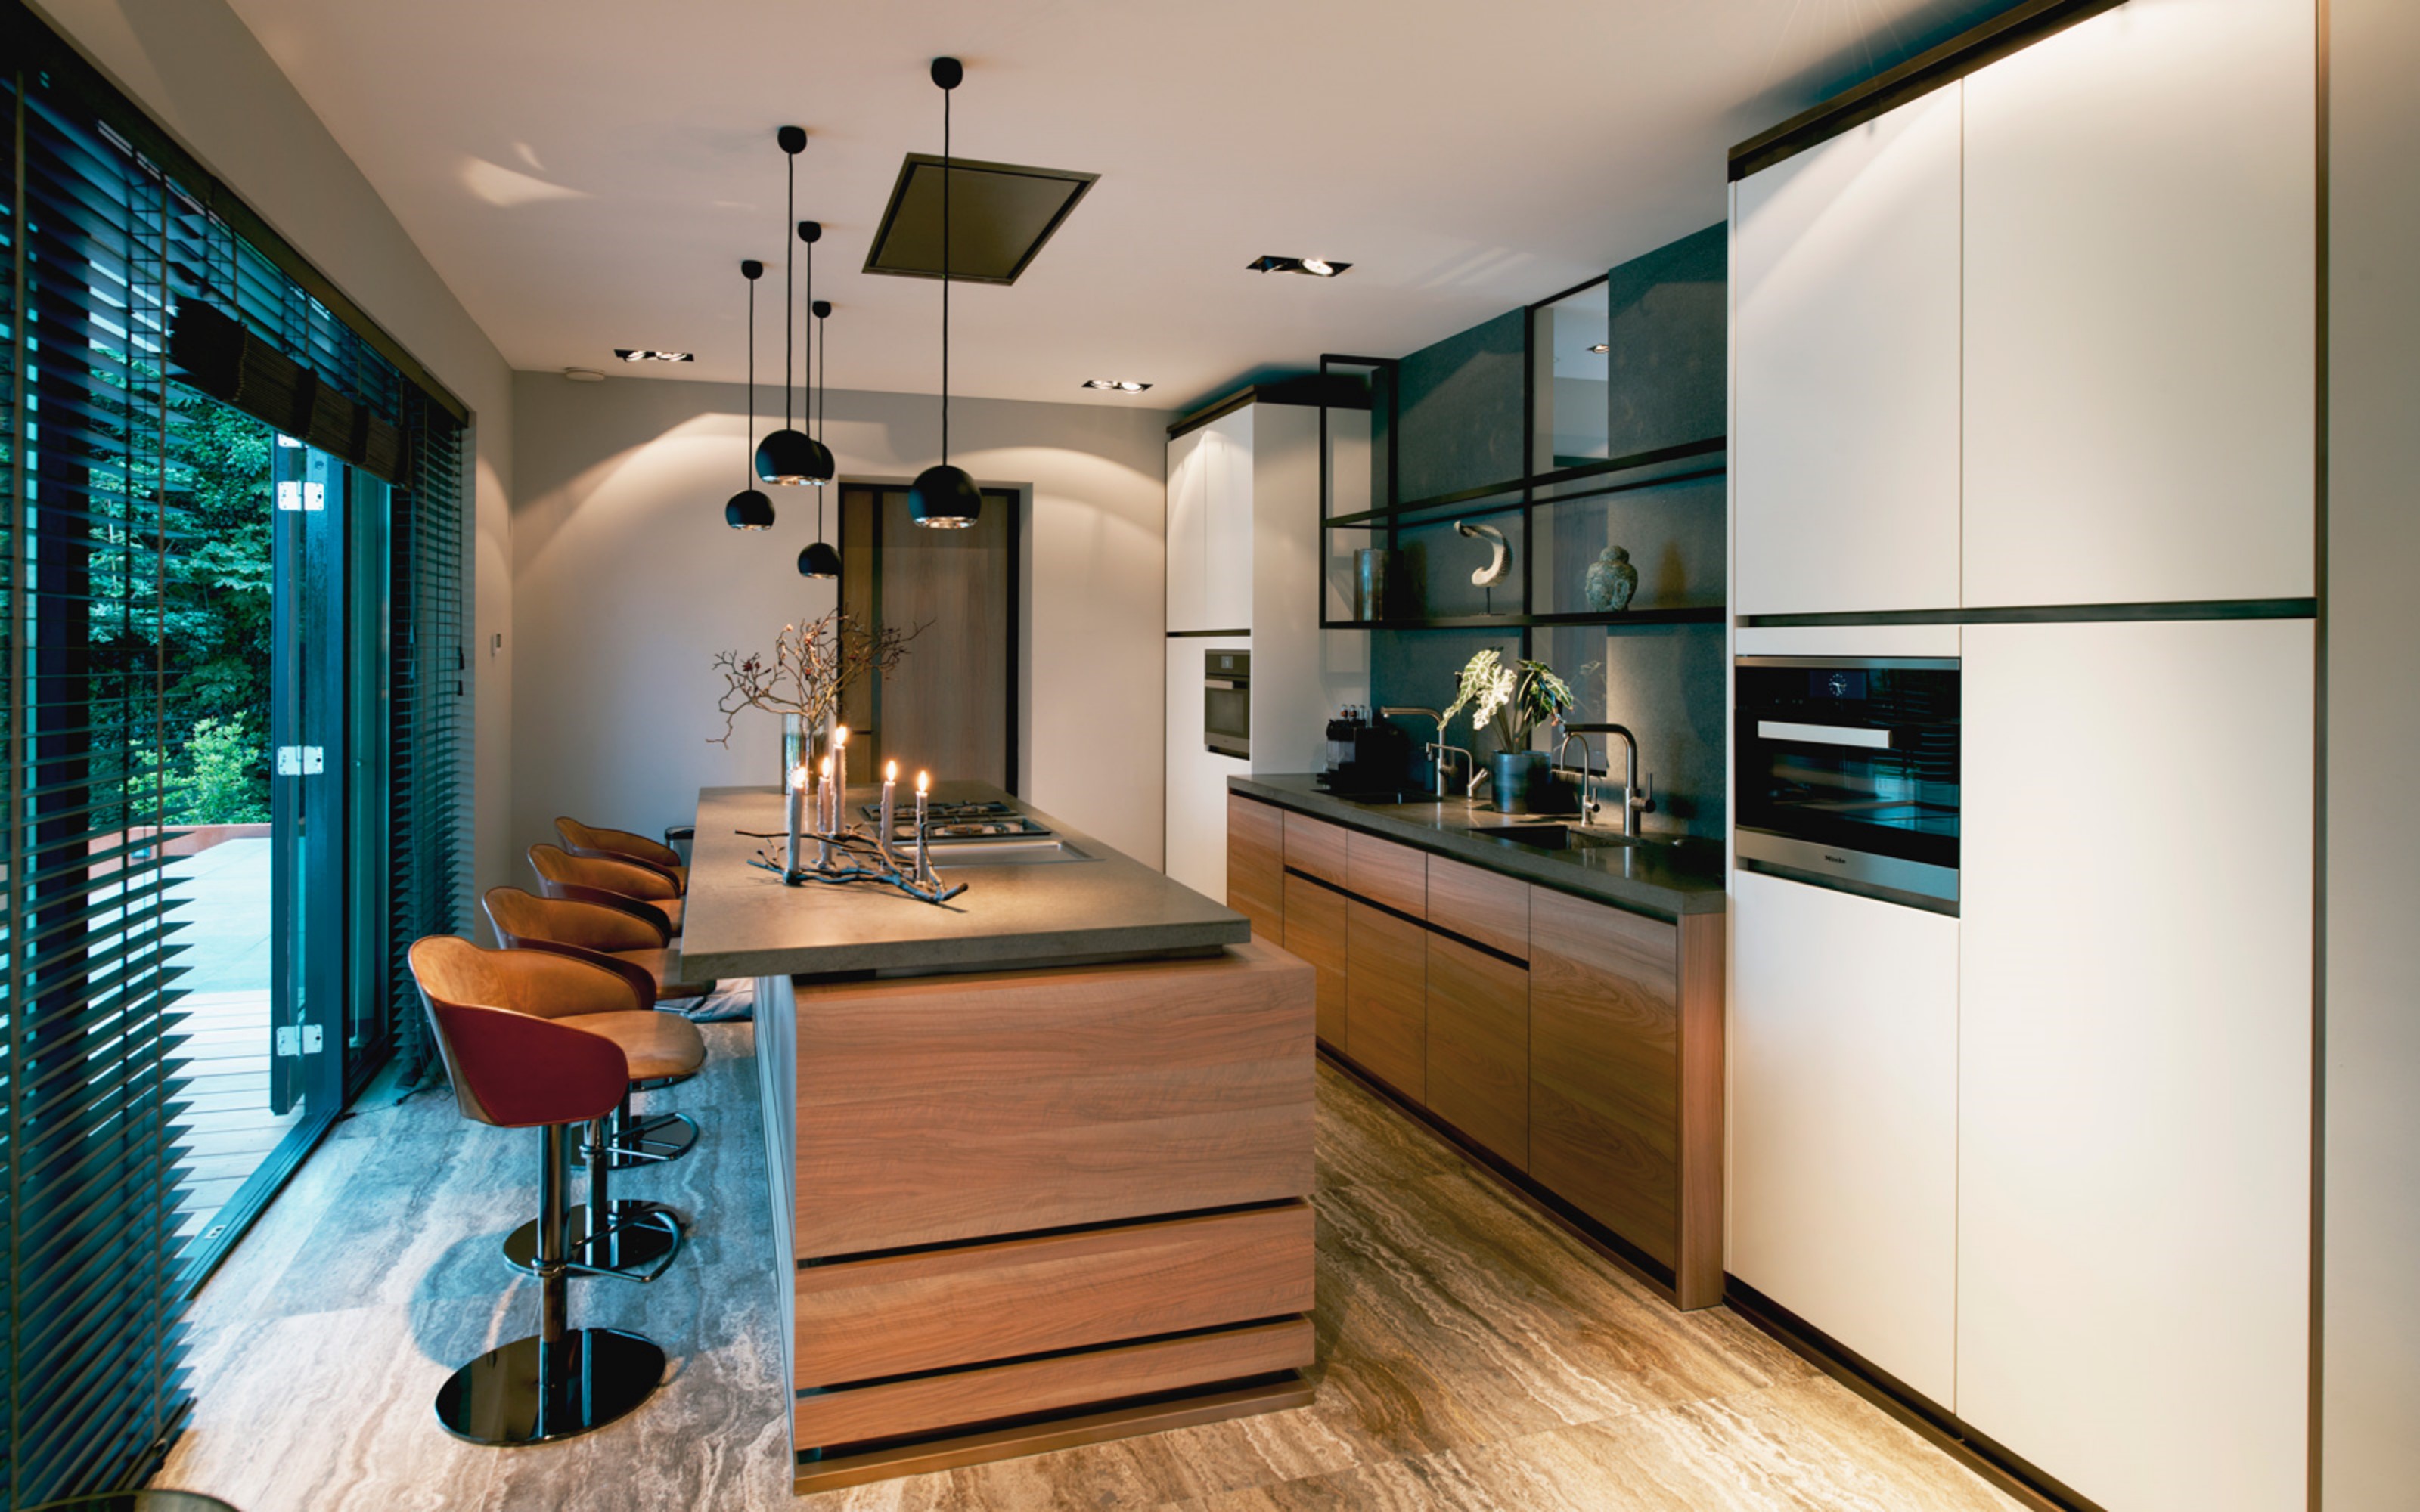 Foto: Geplaatste Tieleman keuken Eric Kant design keuken Middelwijk 1  1600x1200 